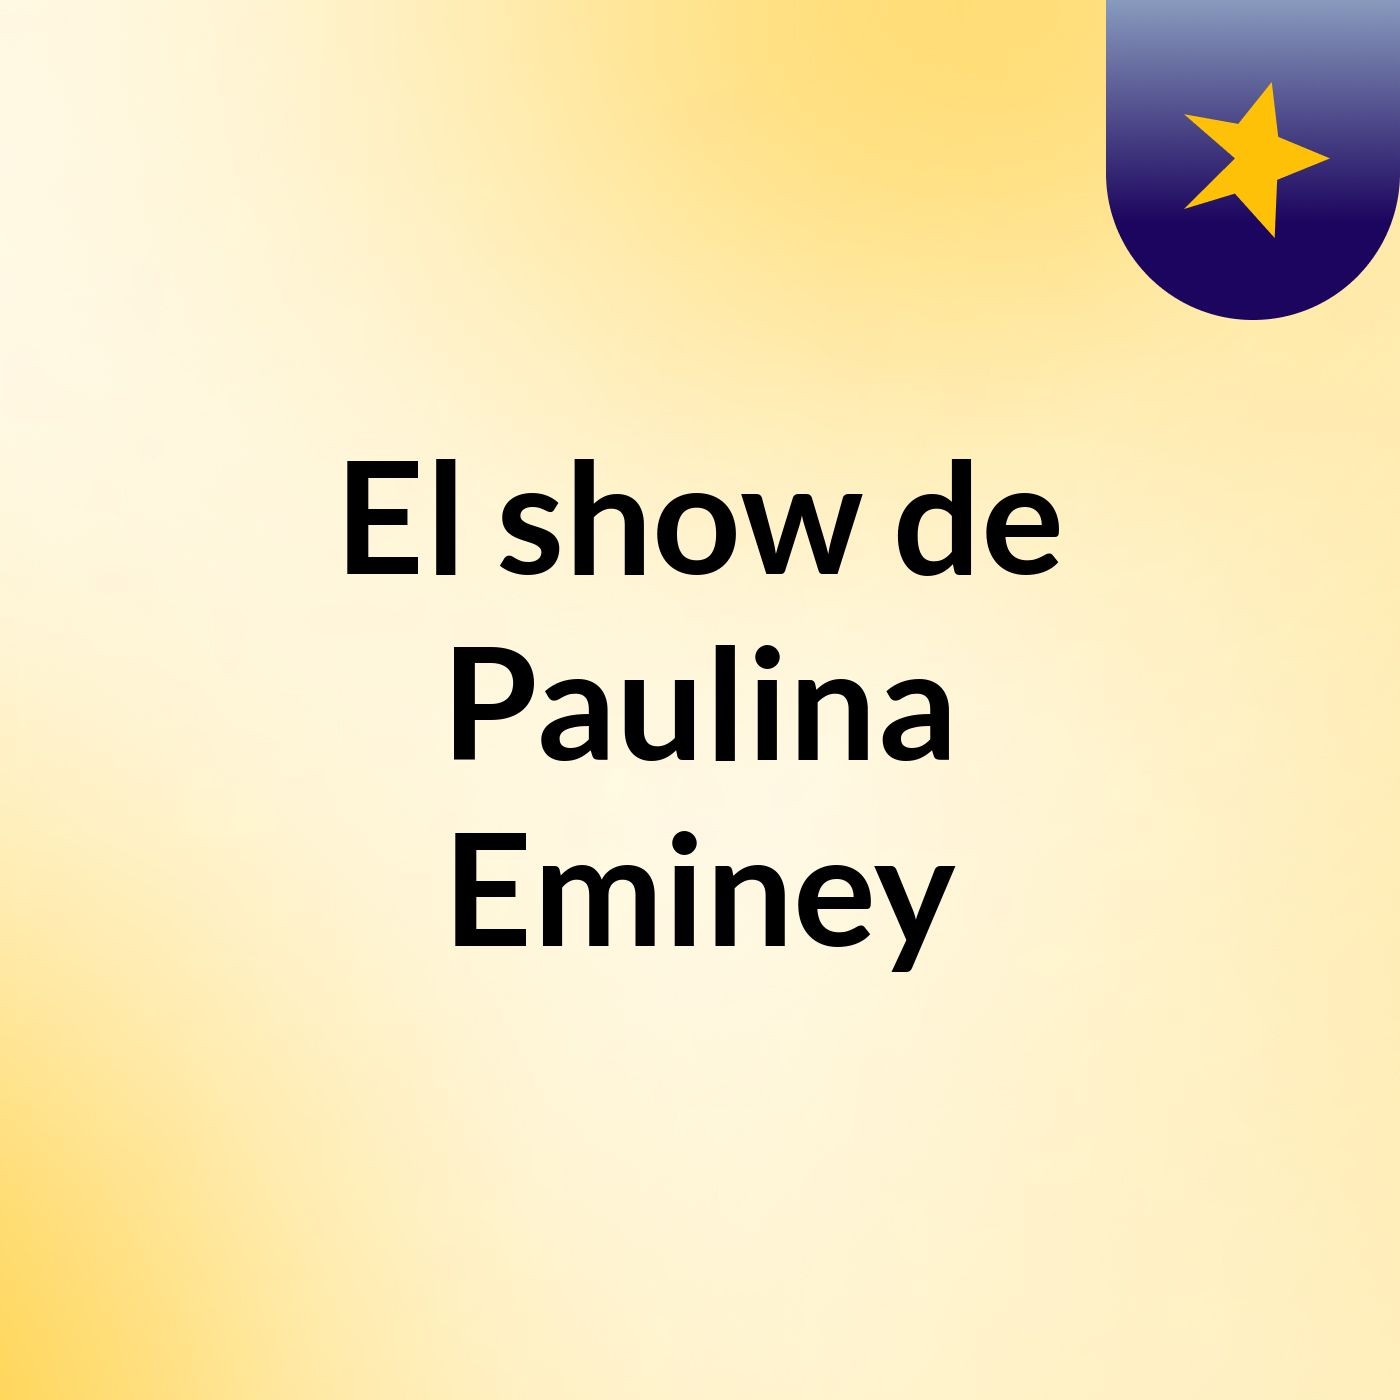 El show de Paulina Eminey